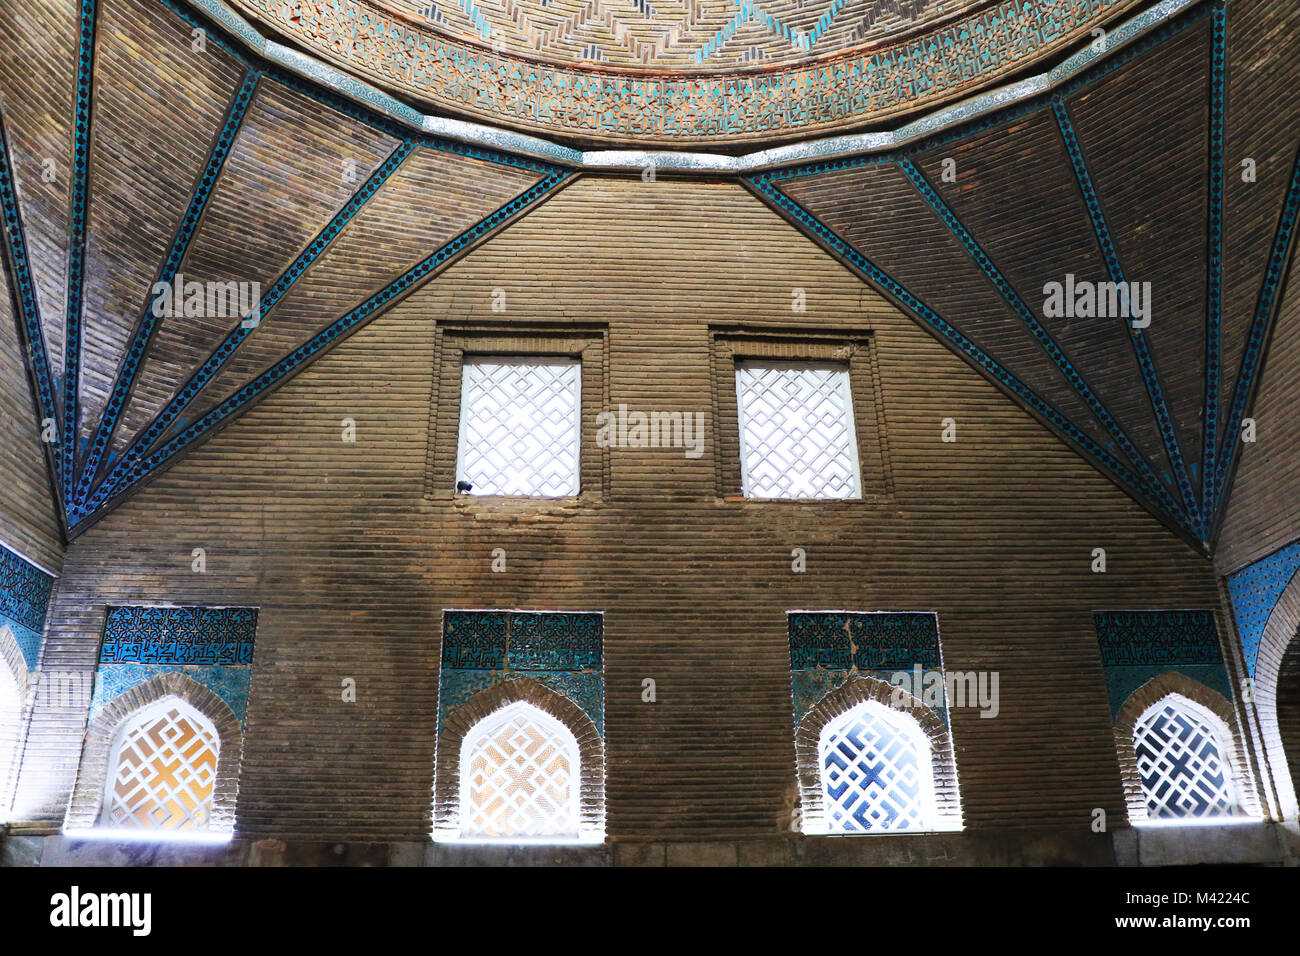 Piscina di Ince Minareli Medrese (esile minareto Madrasah) appartengono al XIII secolo a Konya ,la Turchia. Foto Stock